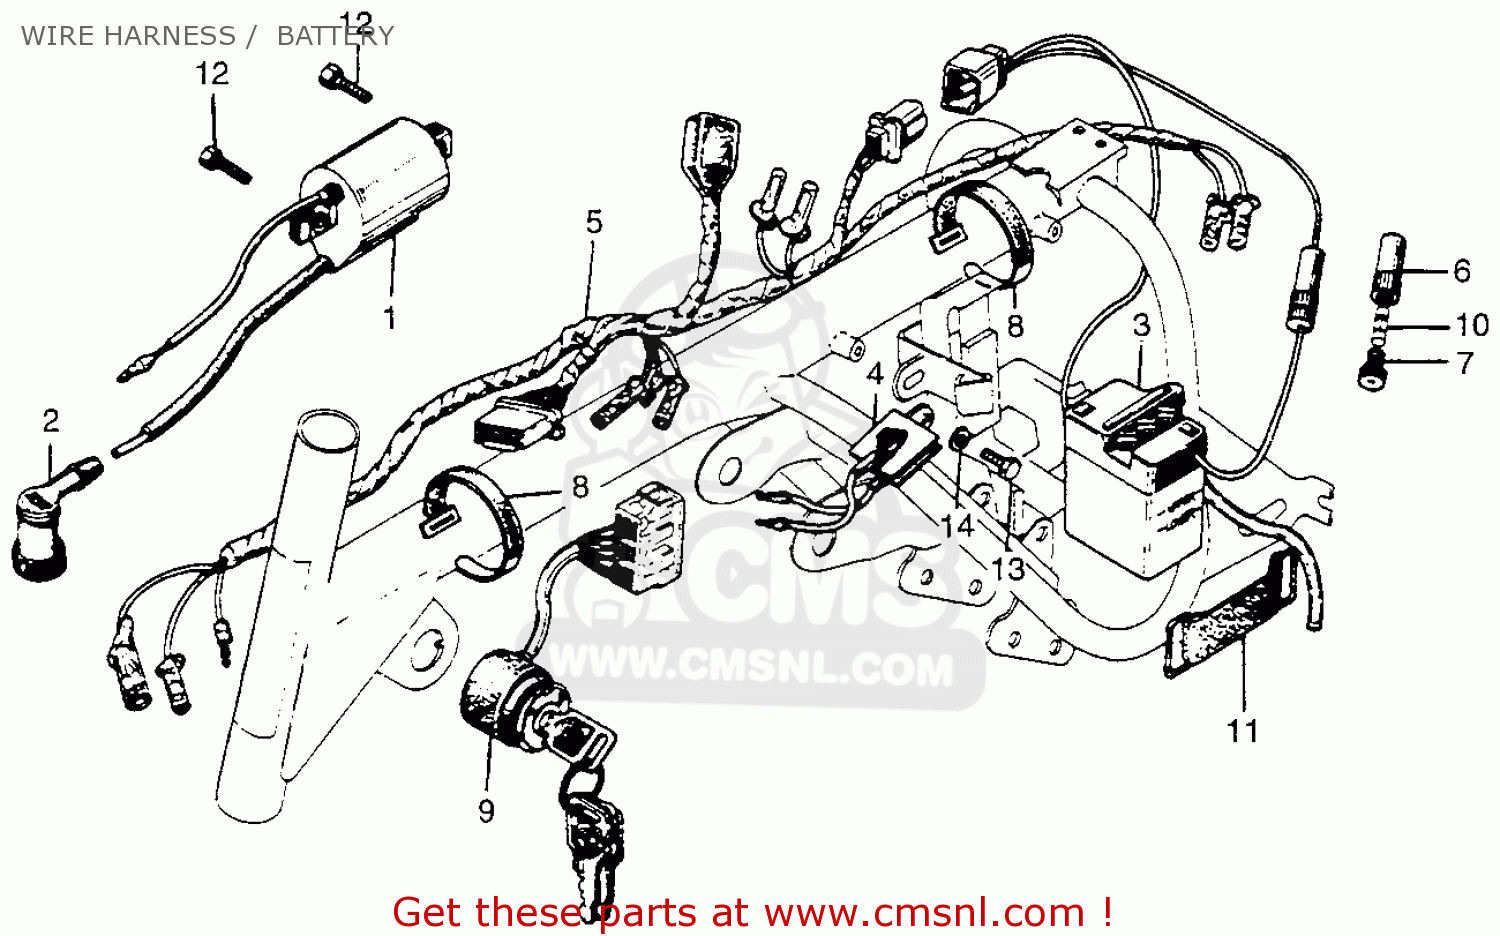 honda z50 carburetor diagram